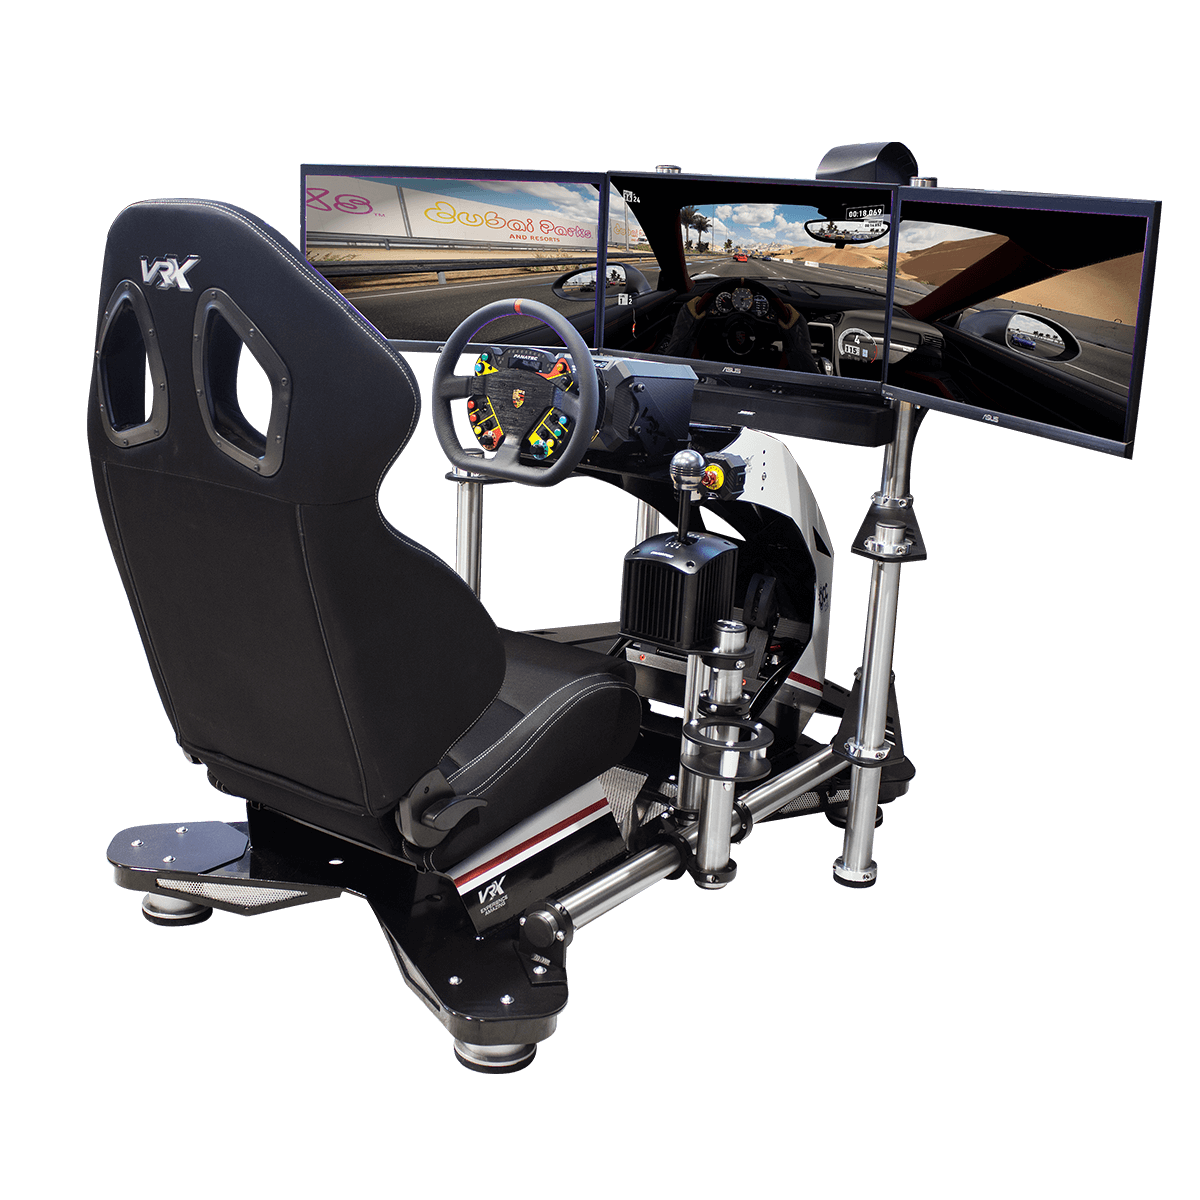 vrx viper non motion racing simulator